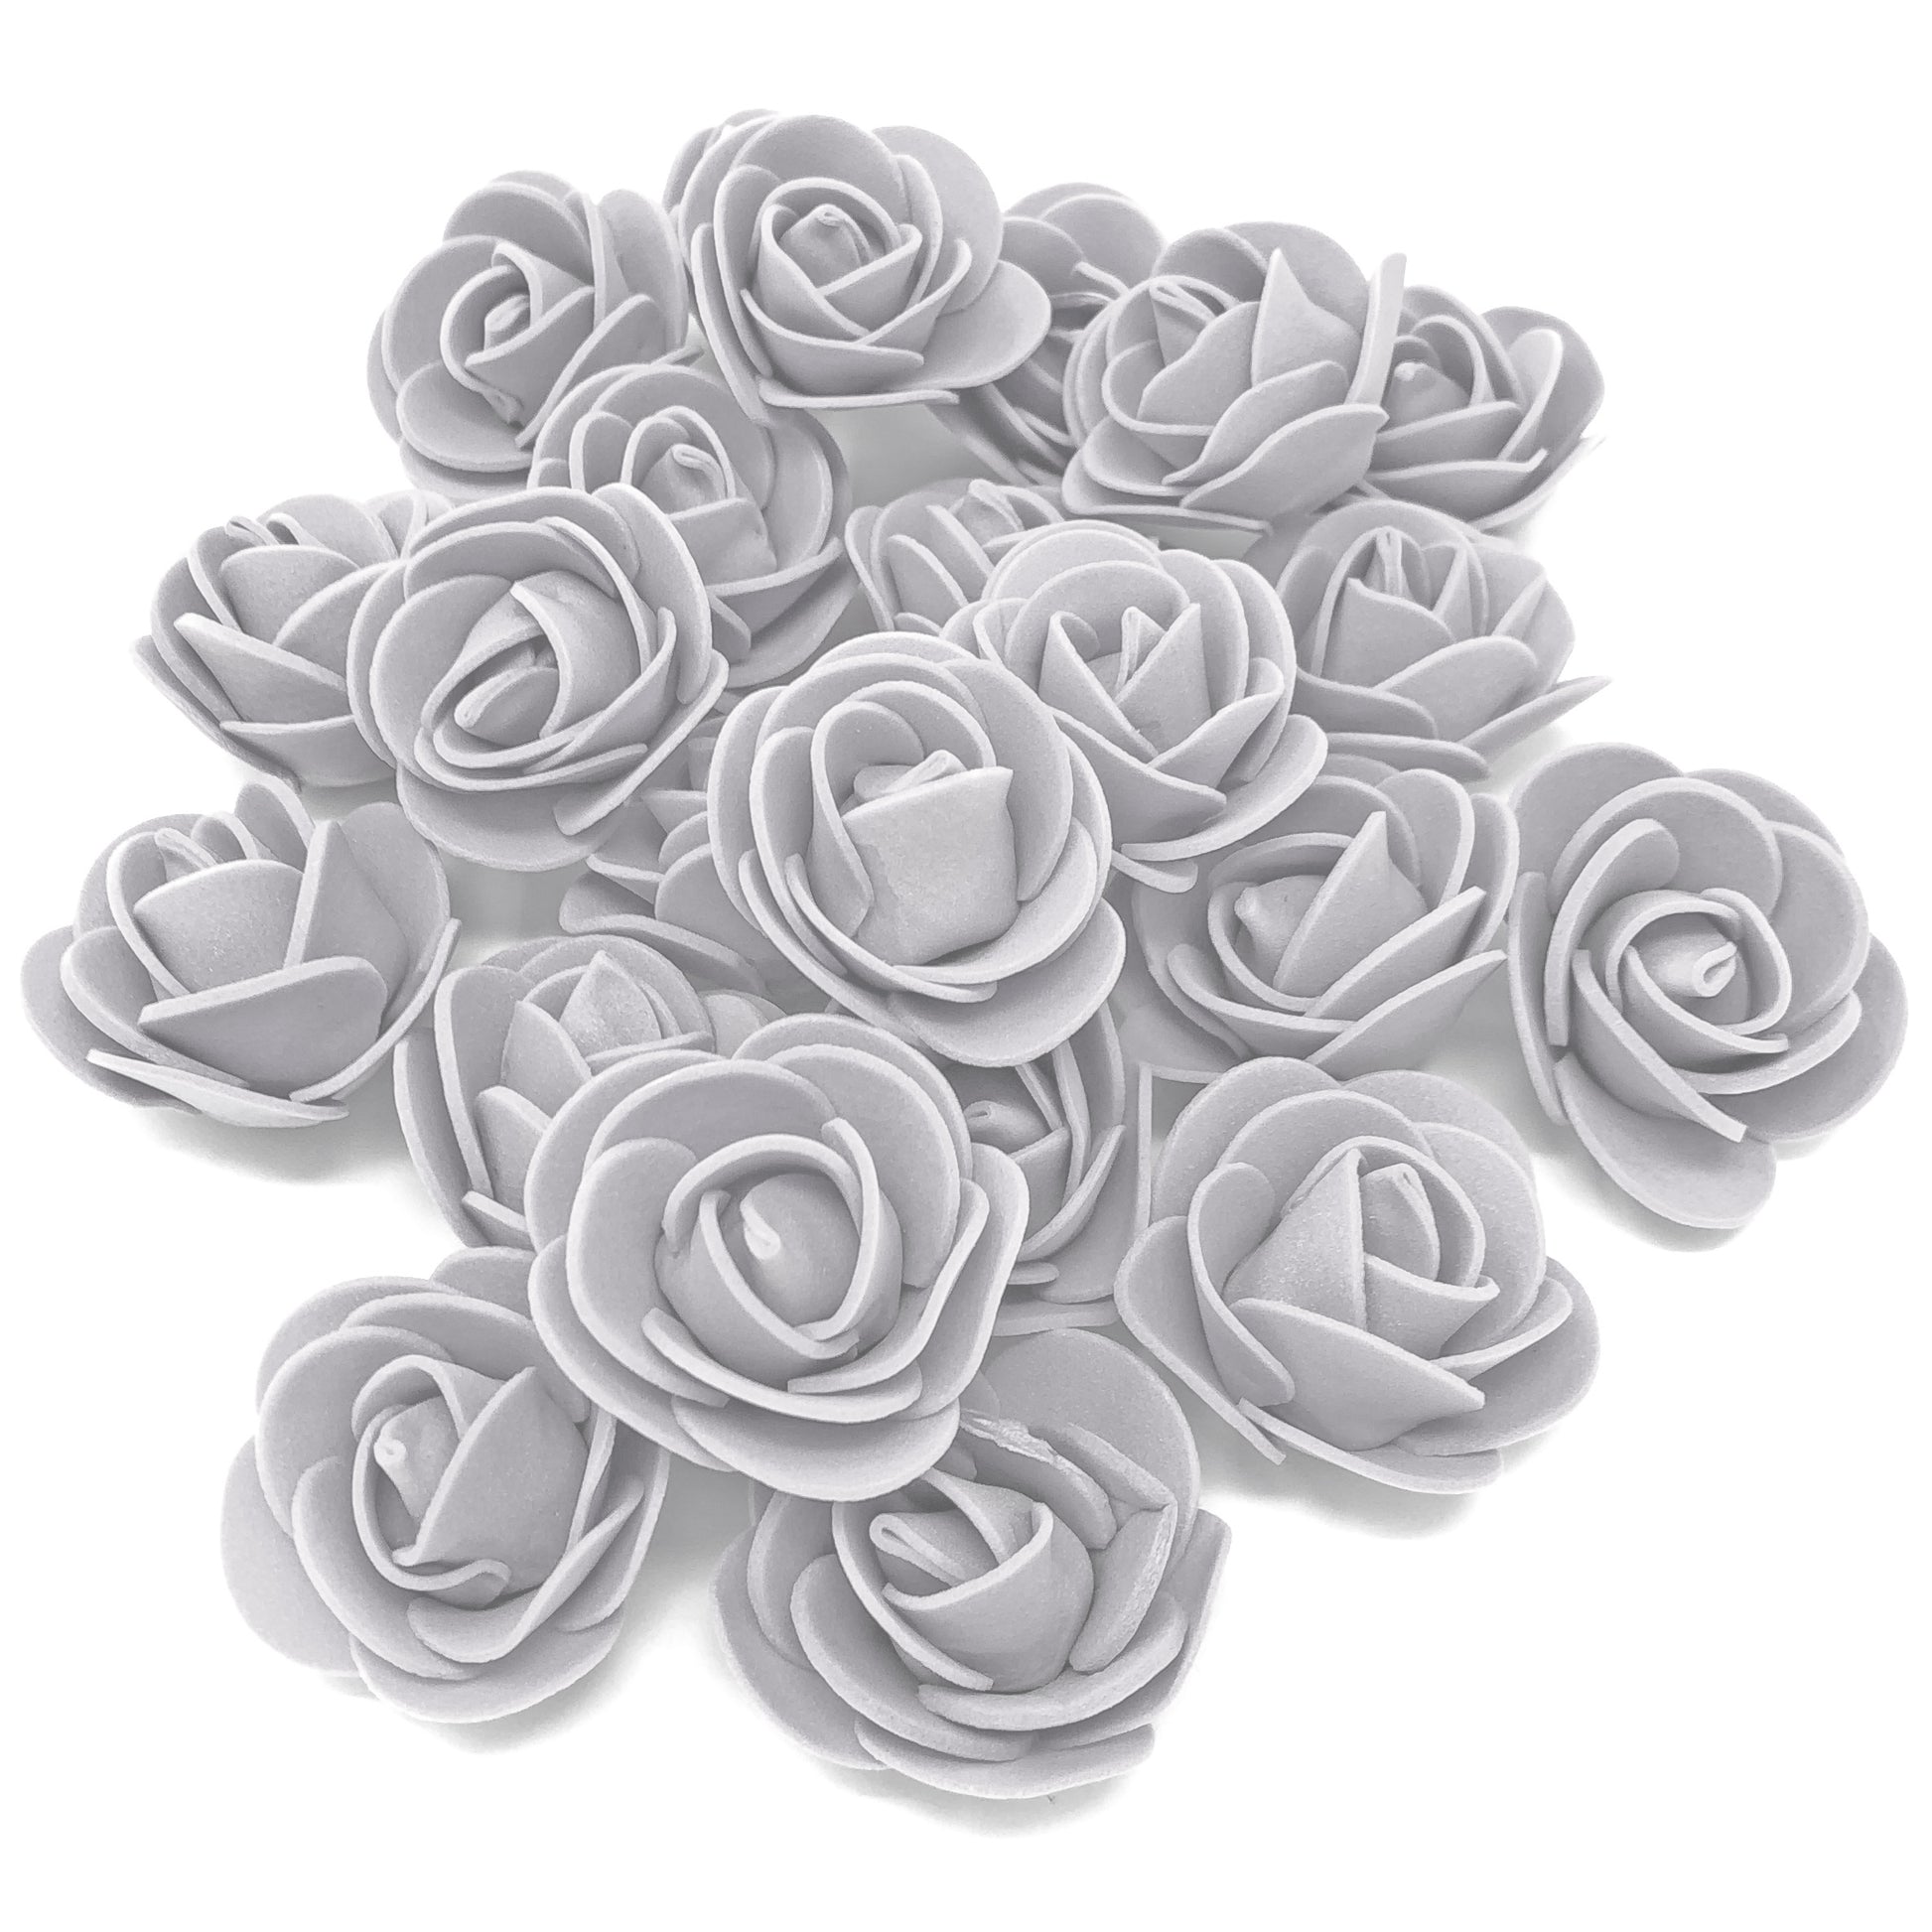 Grey 30mm Foam Rose Flowers